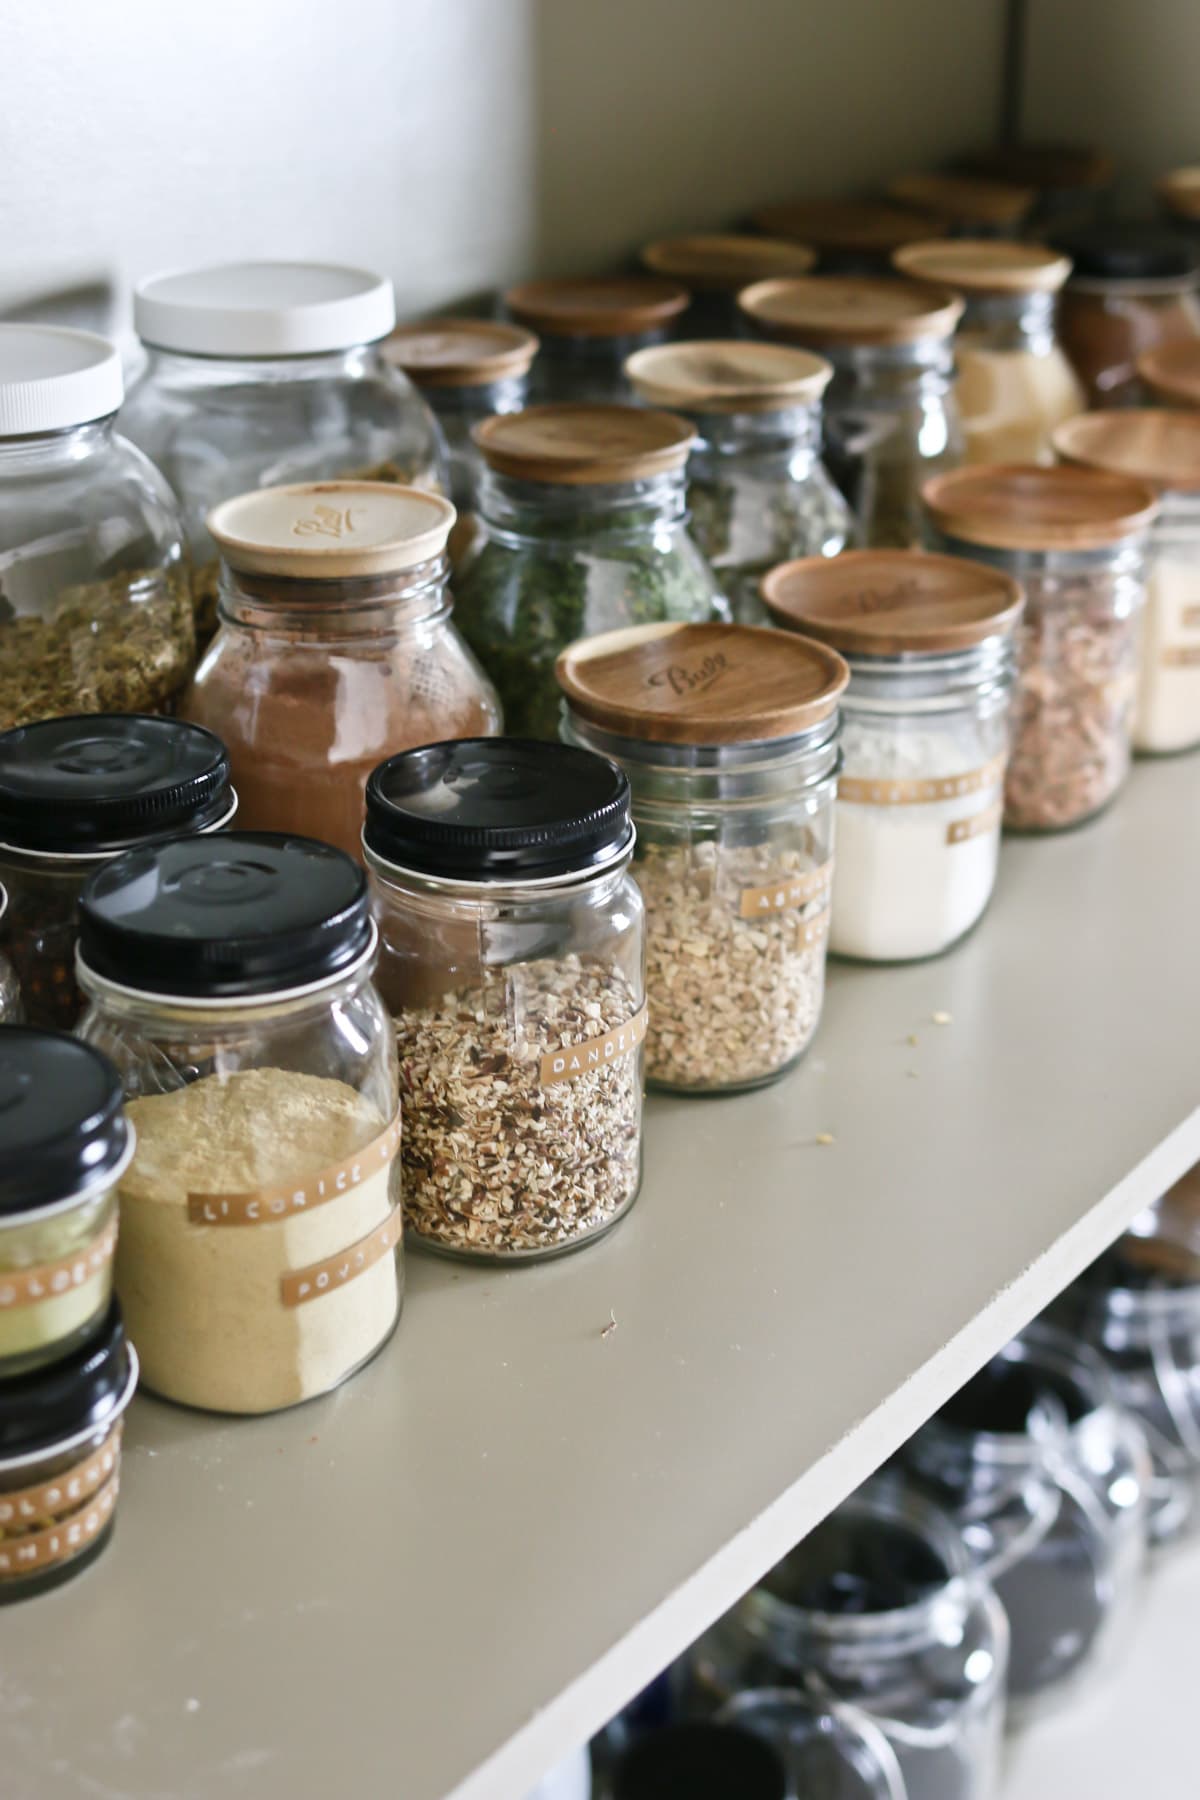 storing herbs in jars